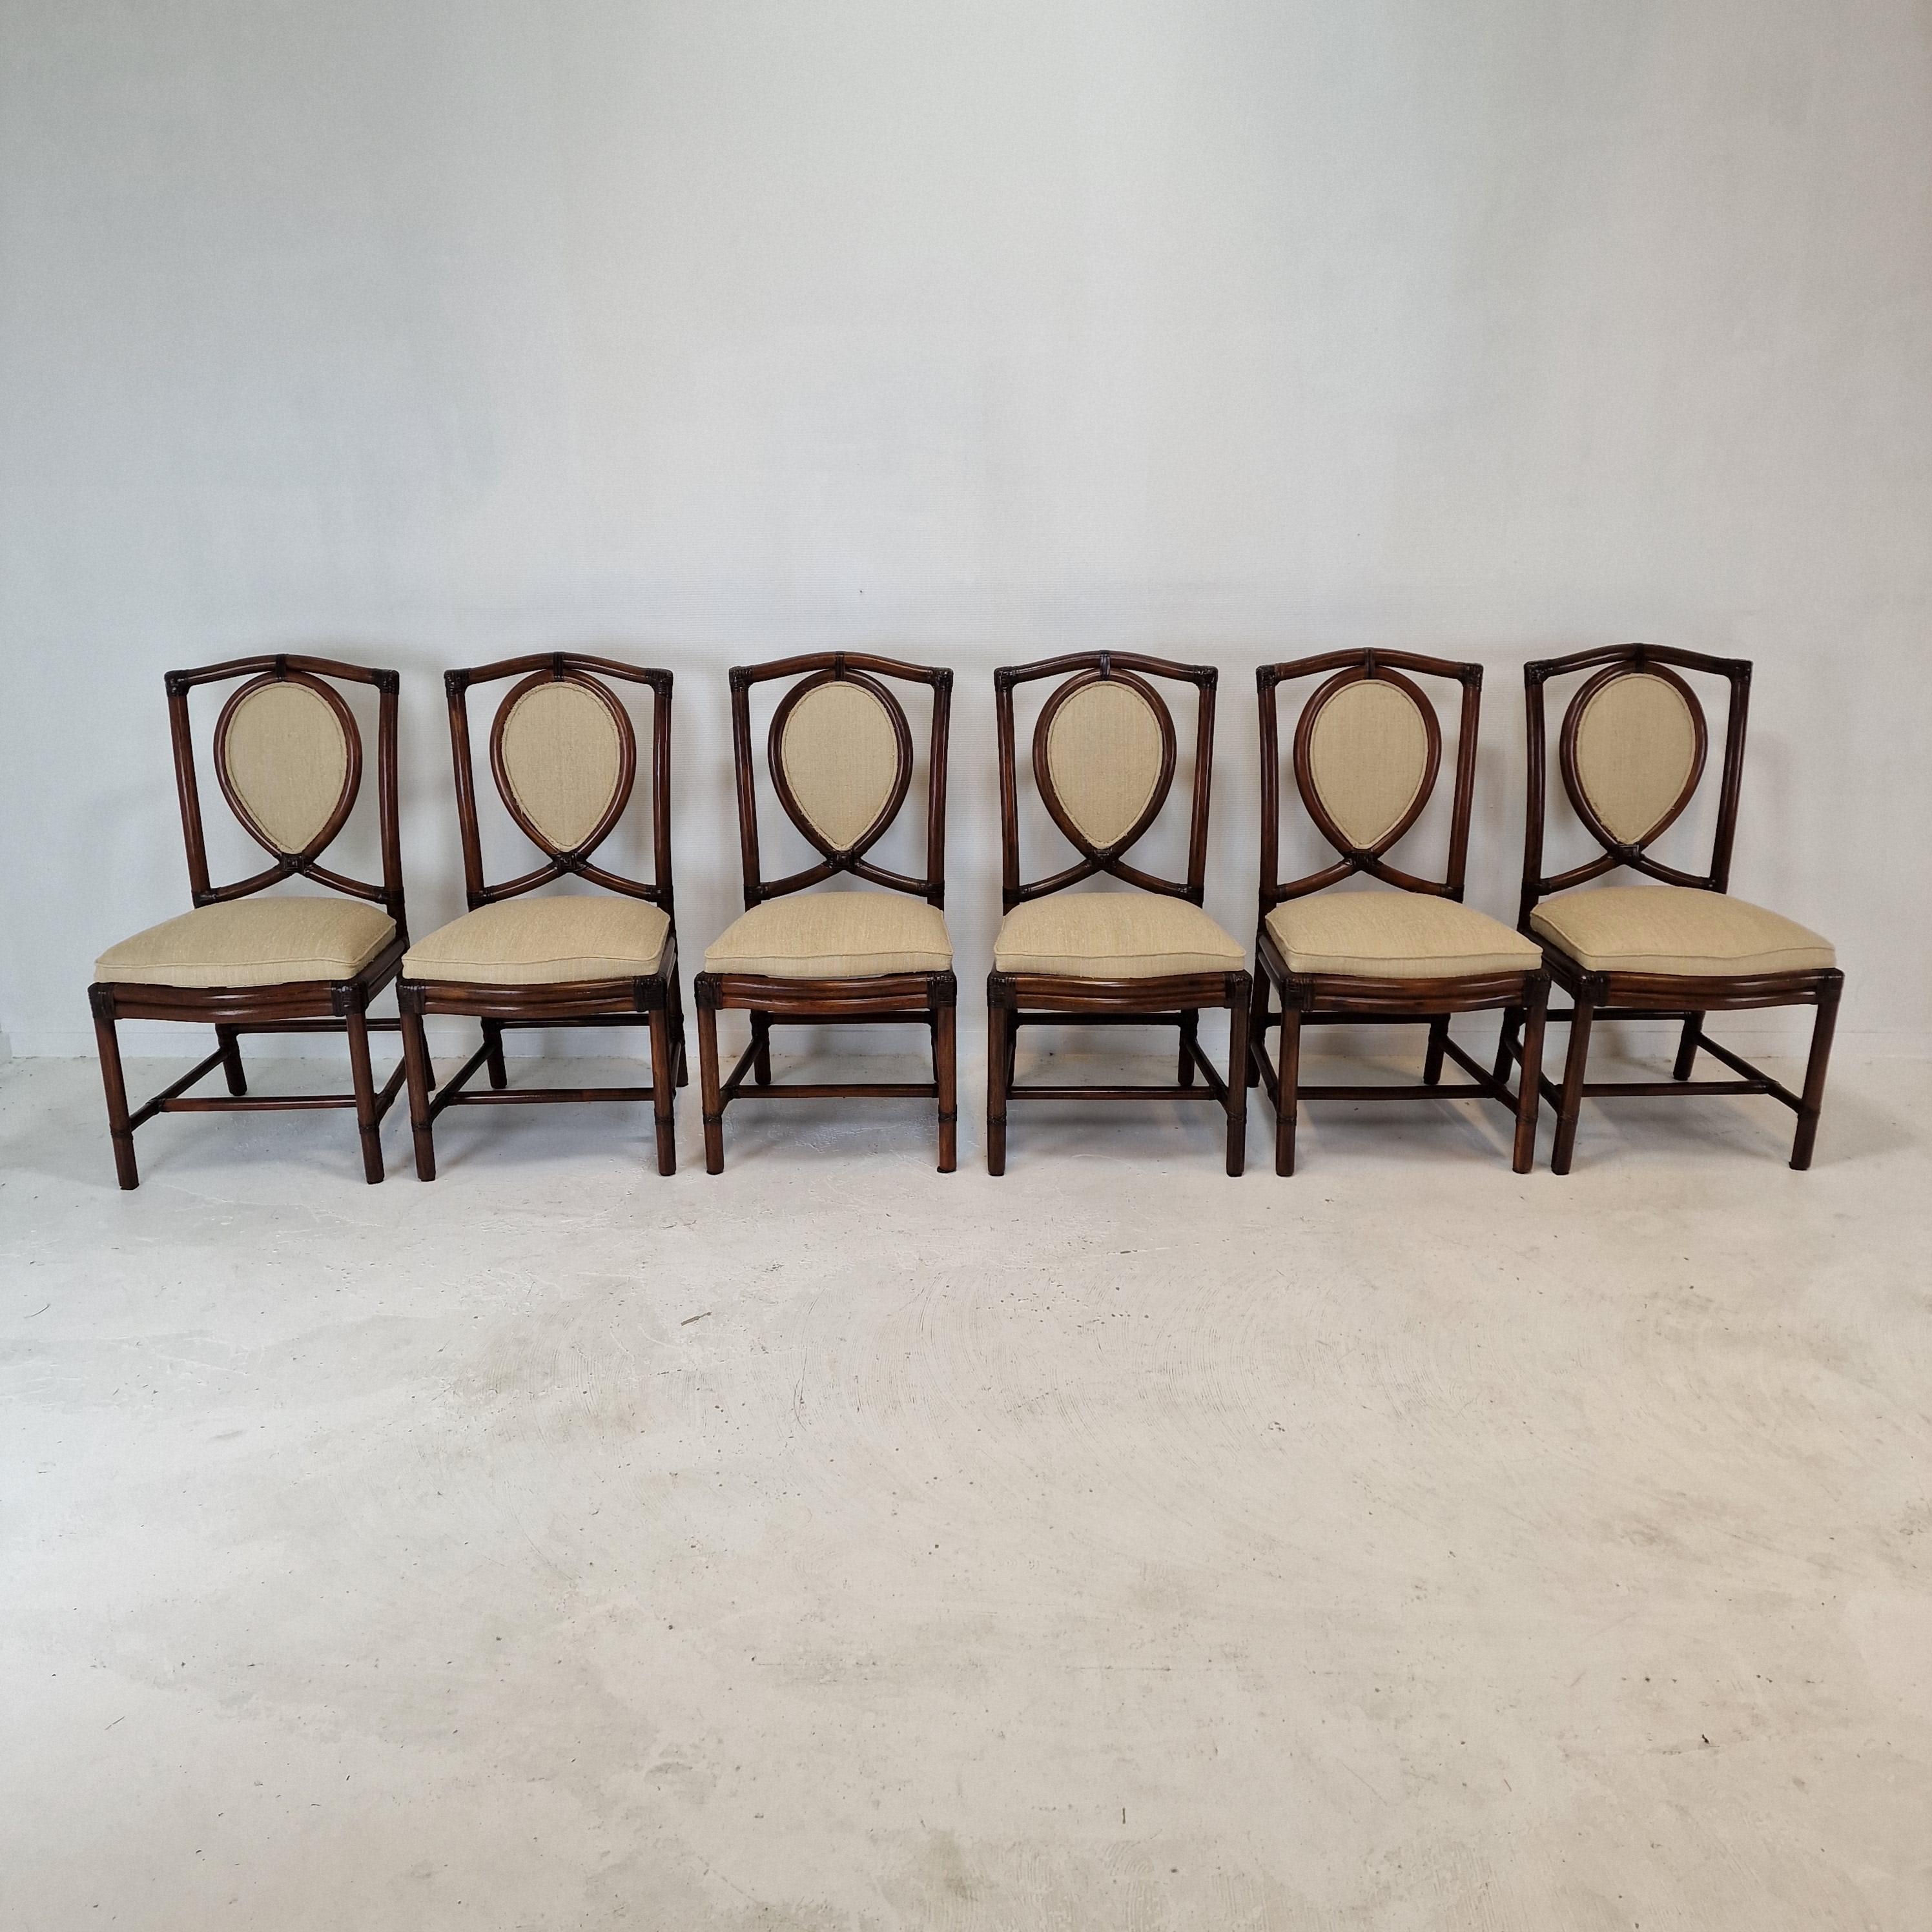 Très bel ensemble de 6 chaises de salle à manger italiennes, fabriquées dans les années 70 par Gasparucci Italo.

Ils sont fabriqués en bambou.
Les chaises sont en bon état.

Nous travaillons avec des emballeurs et des expéditeurs professionnels,